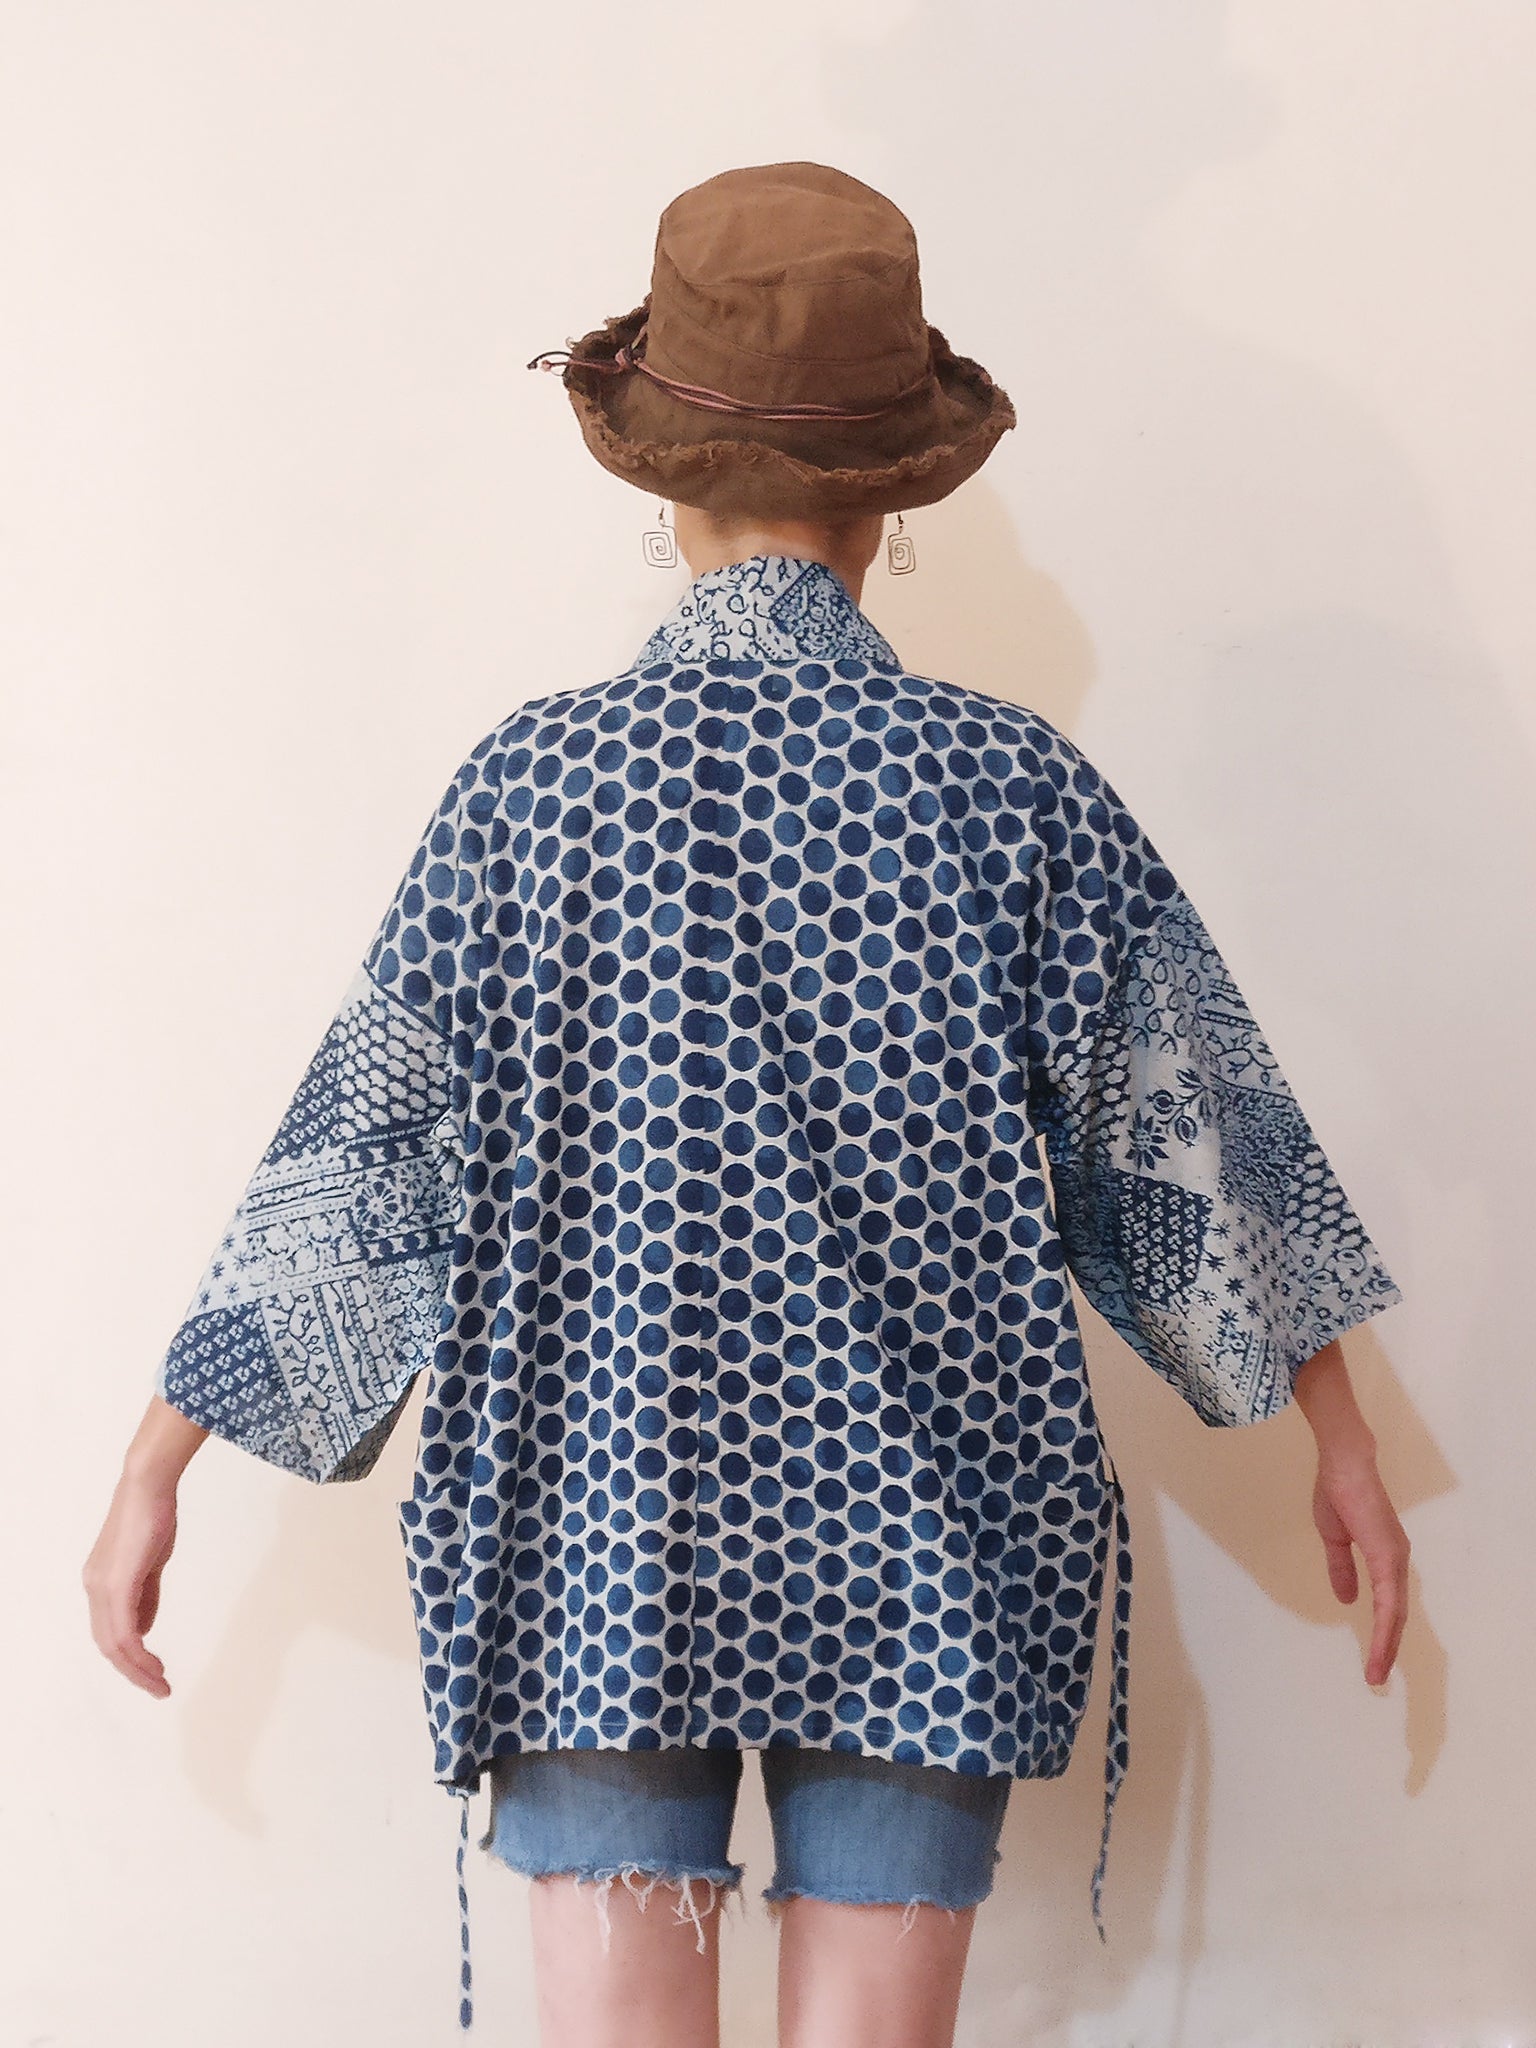 Kimono (Jinbei) Jacket - Indigo Dot Print & Indigo Patchwork Print Sleeves